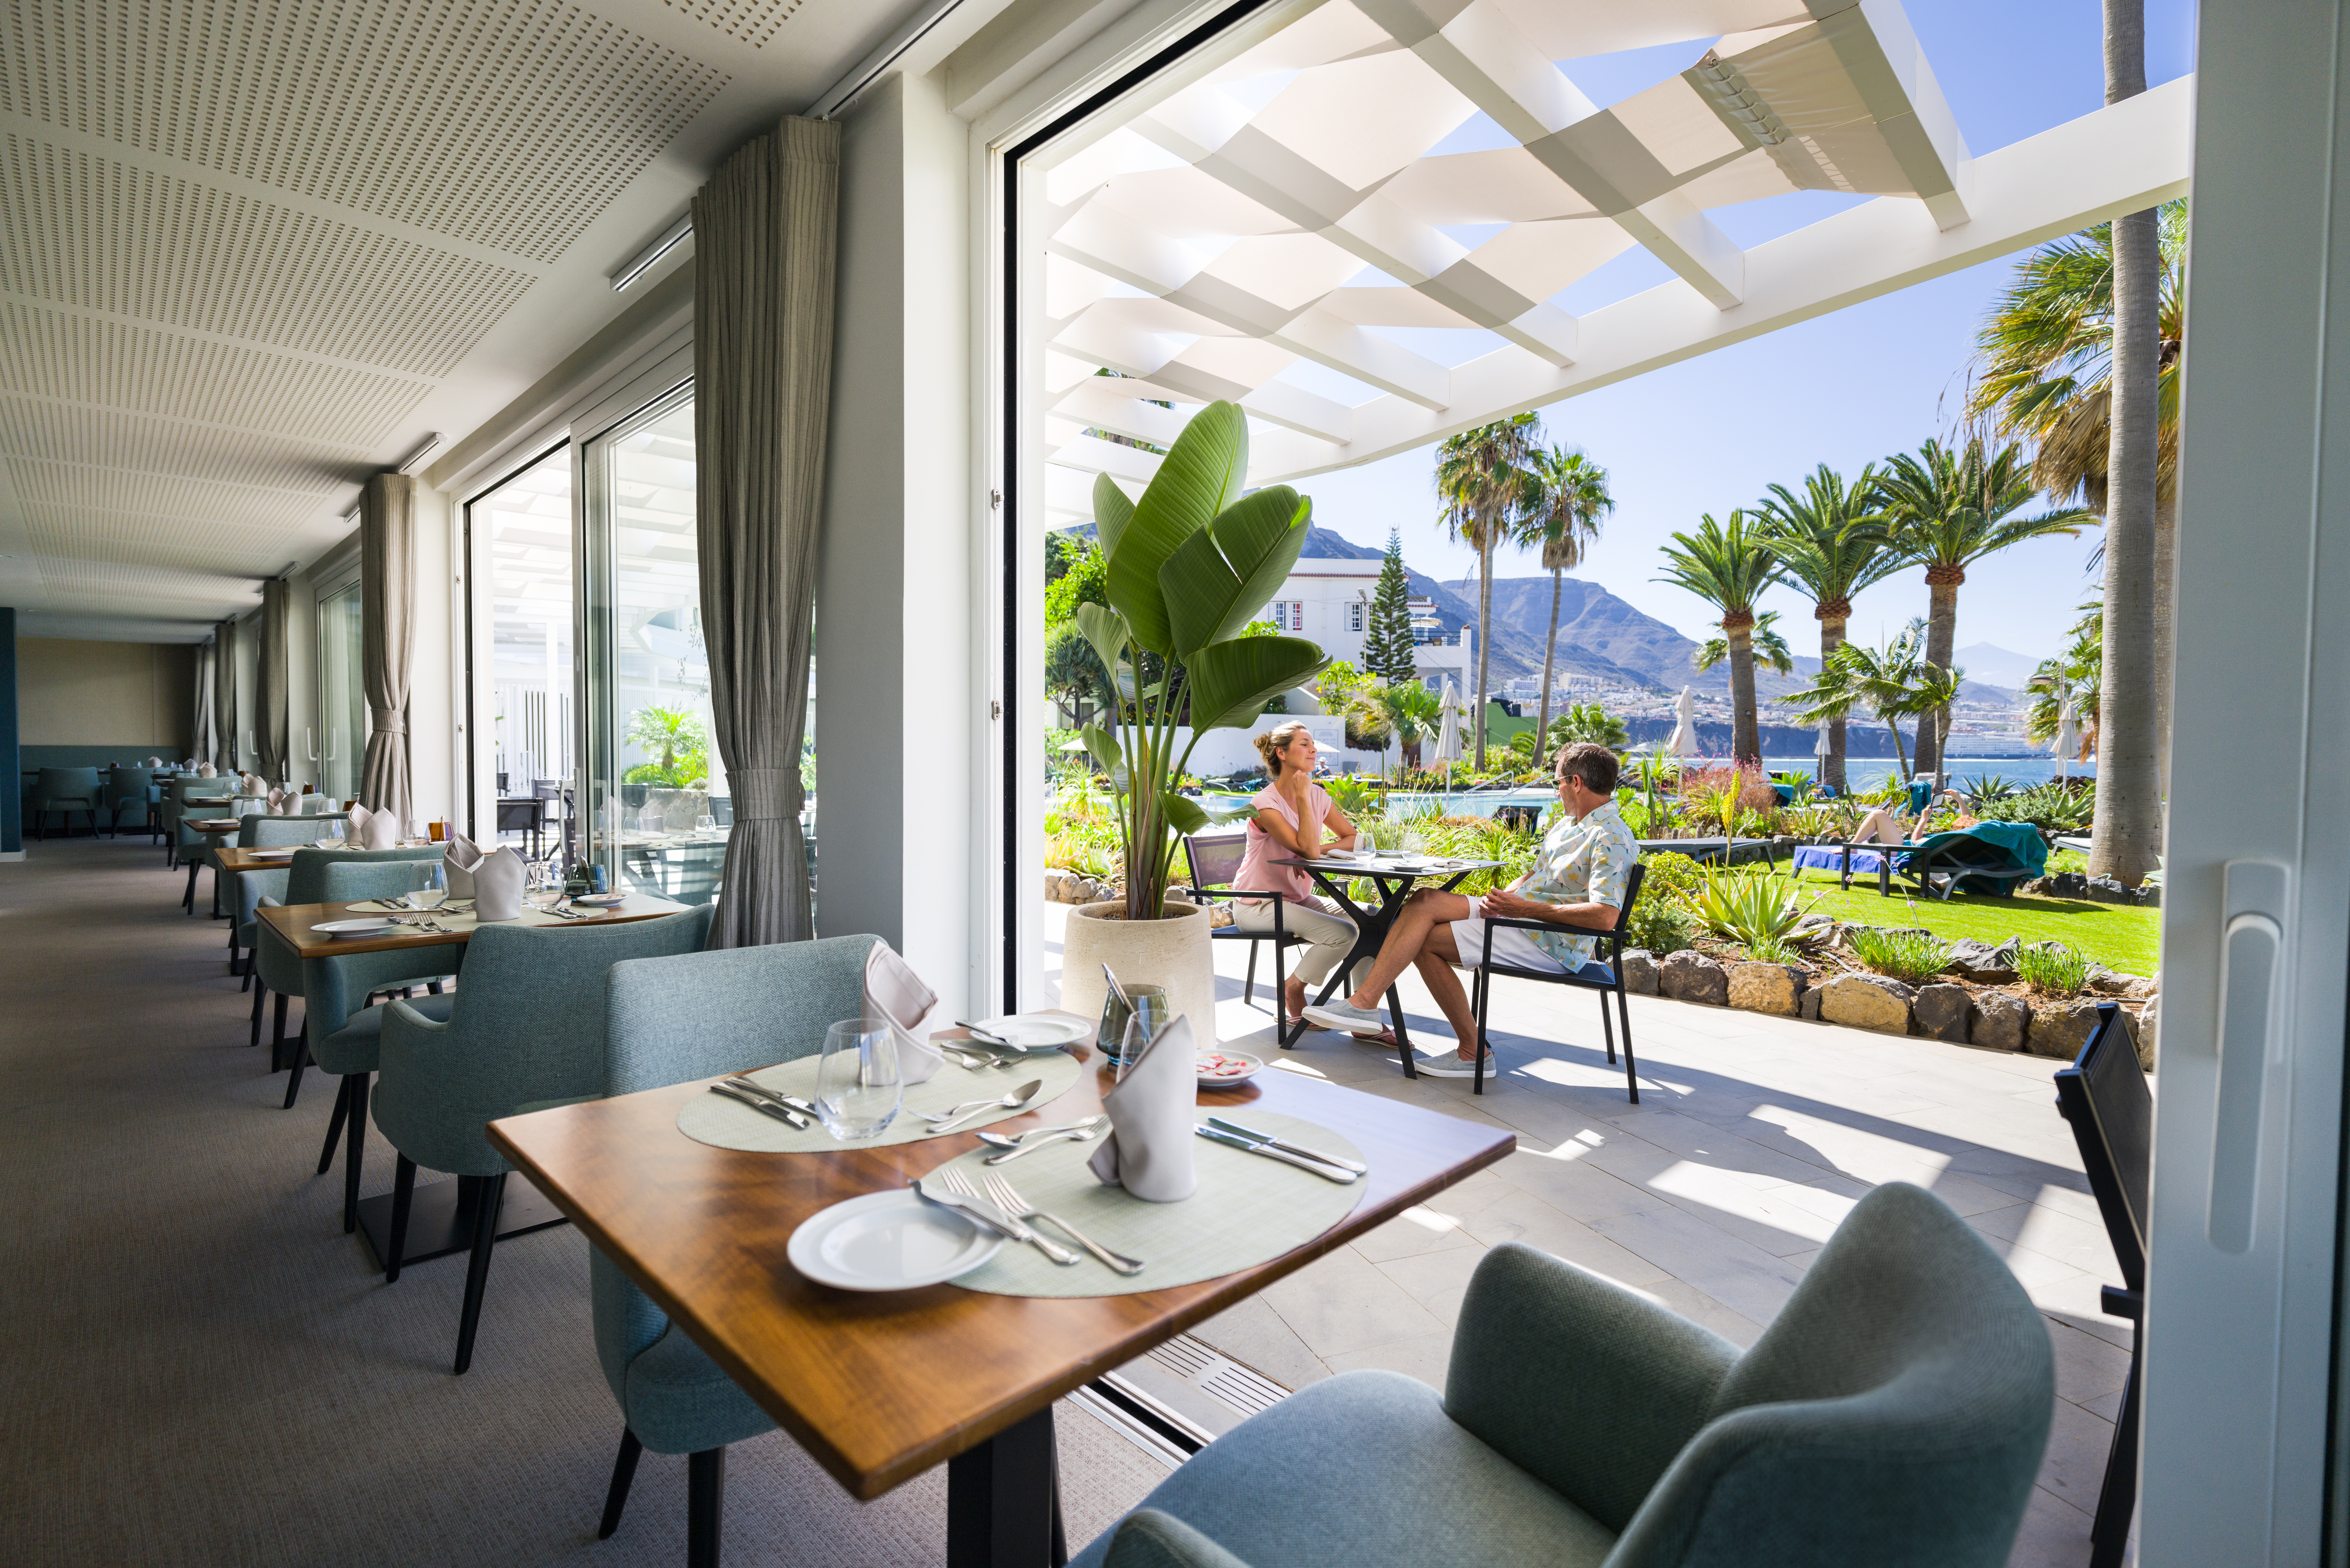 Gutschein im Wert von 4382 Euro für Urlaub im OCÉANO Health Spa Hotel auf Teneriffa